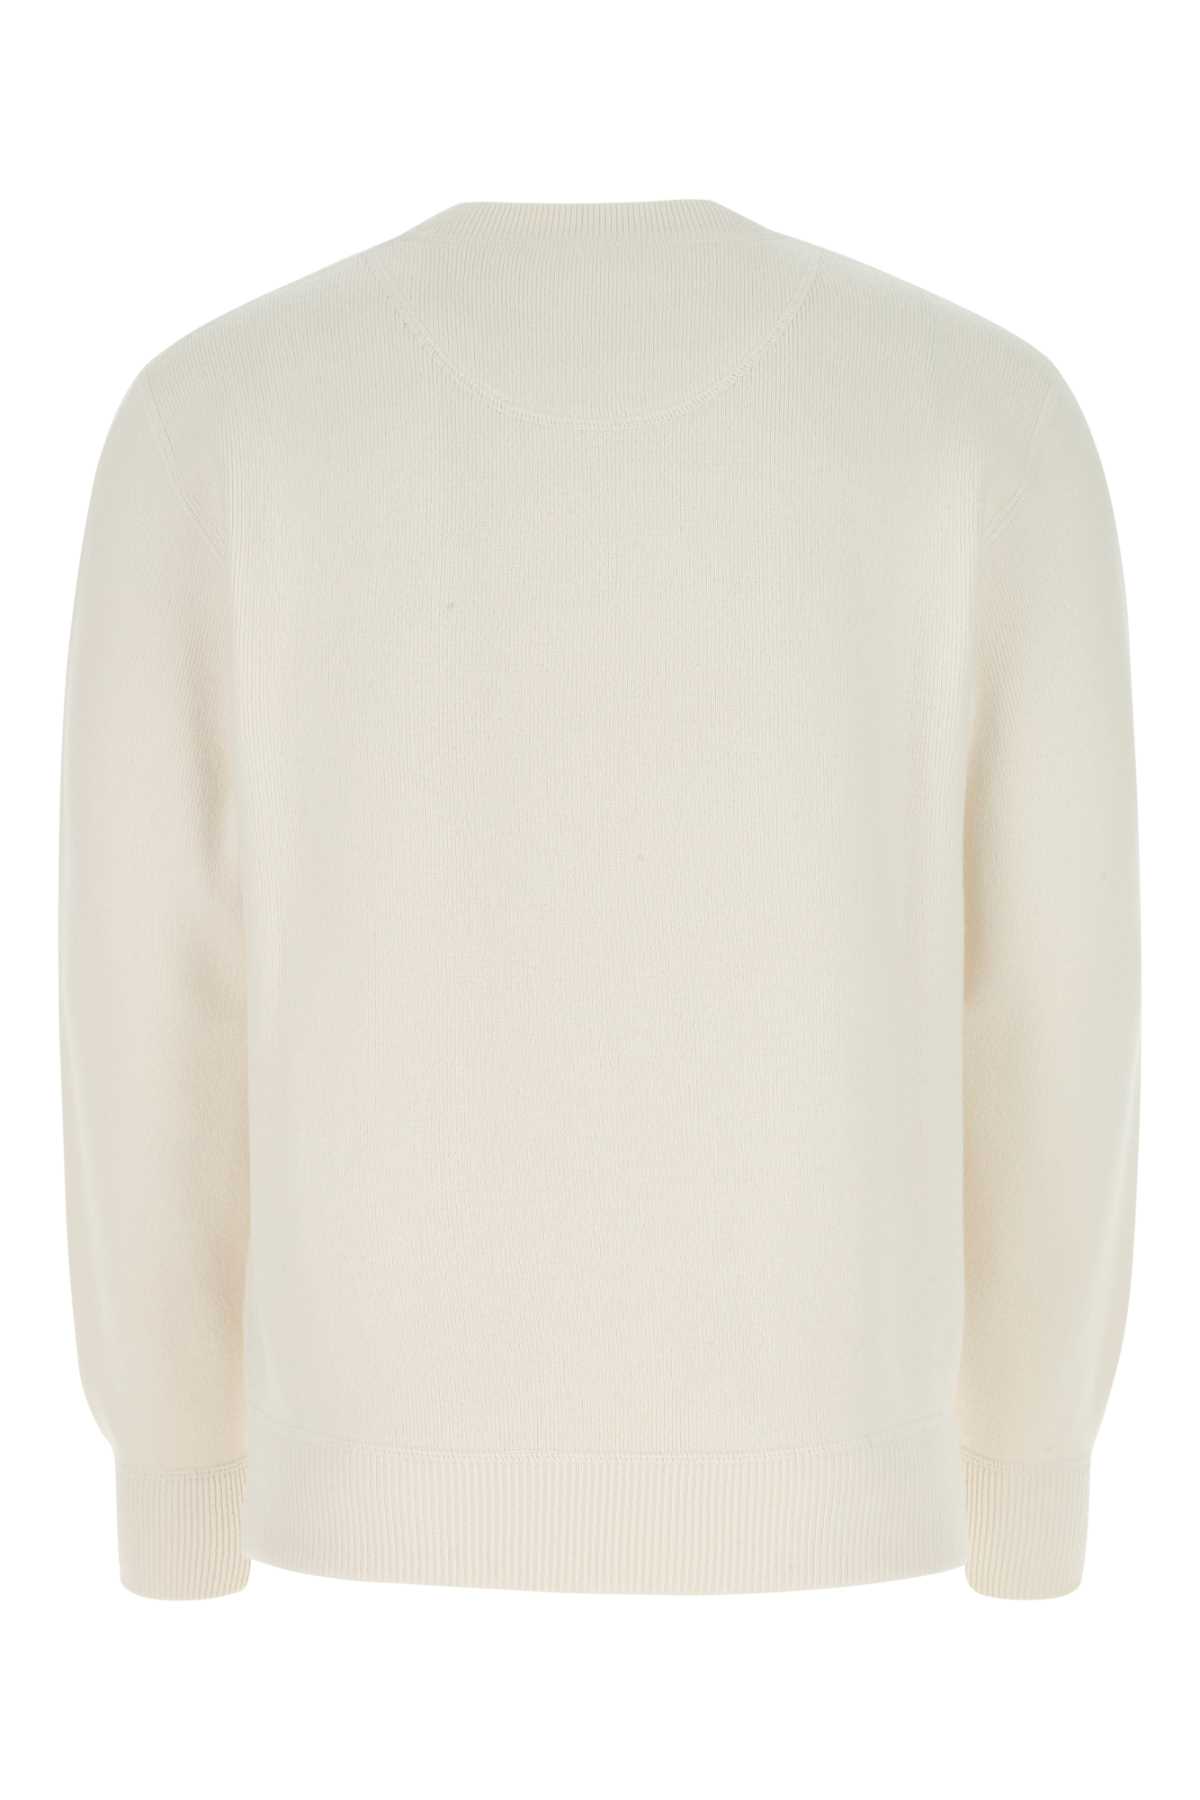 Prada Ivory Stretch Cashmere Blend Sweater In F0009